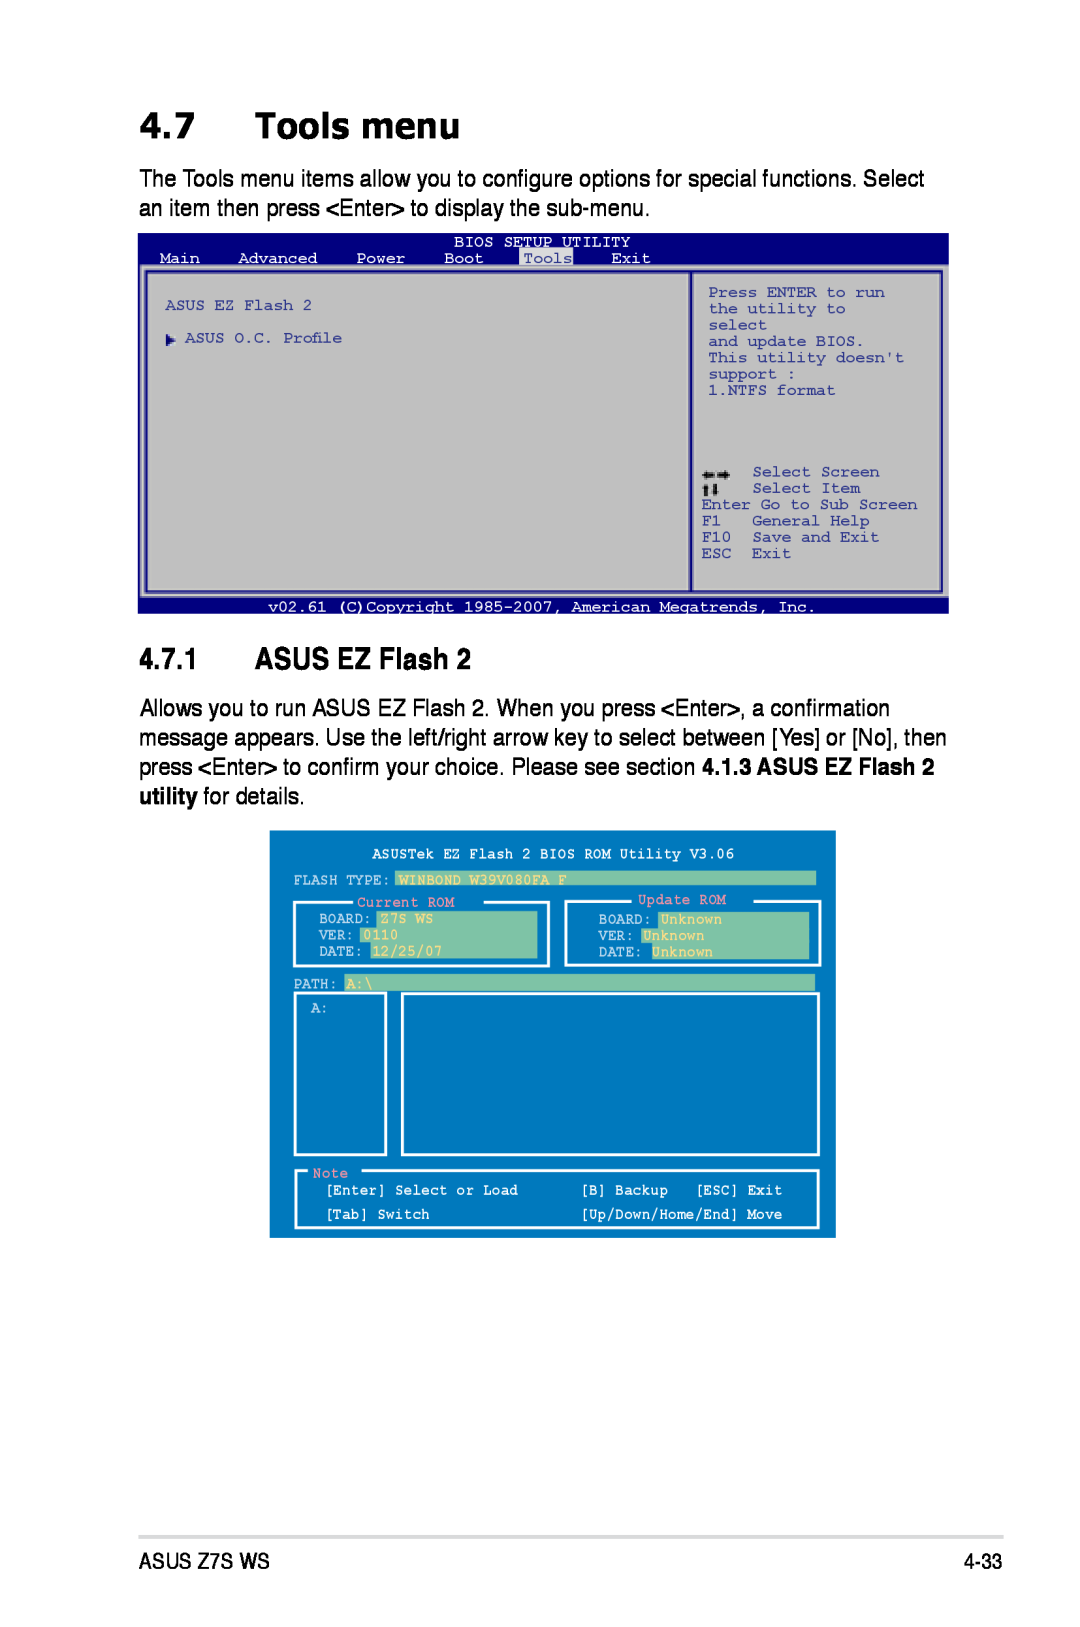 Asus Z7S WS manual Tools menu, ASUS EZ Flash 